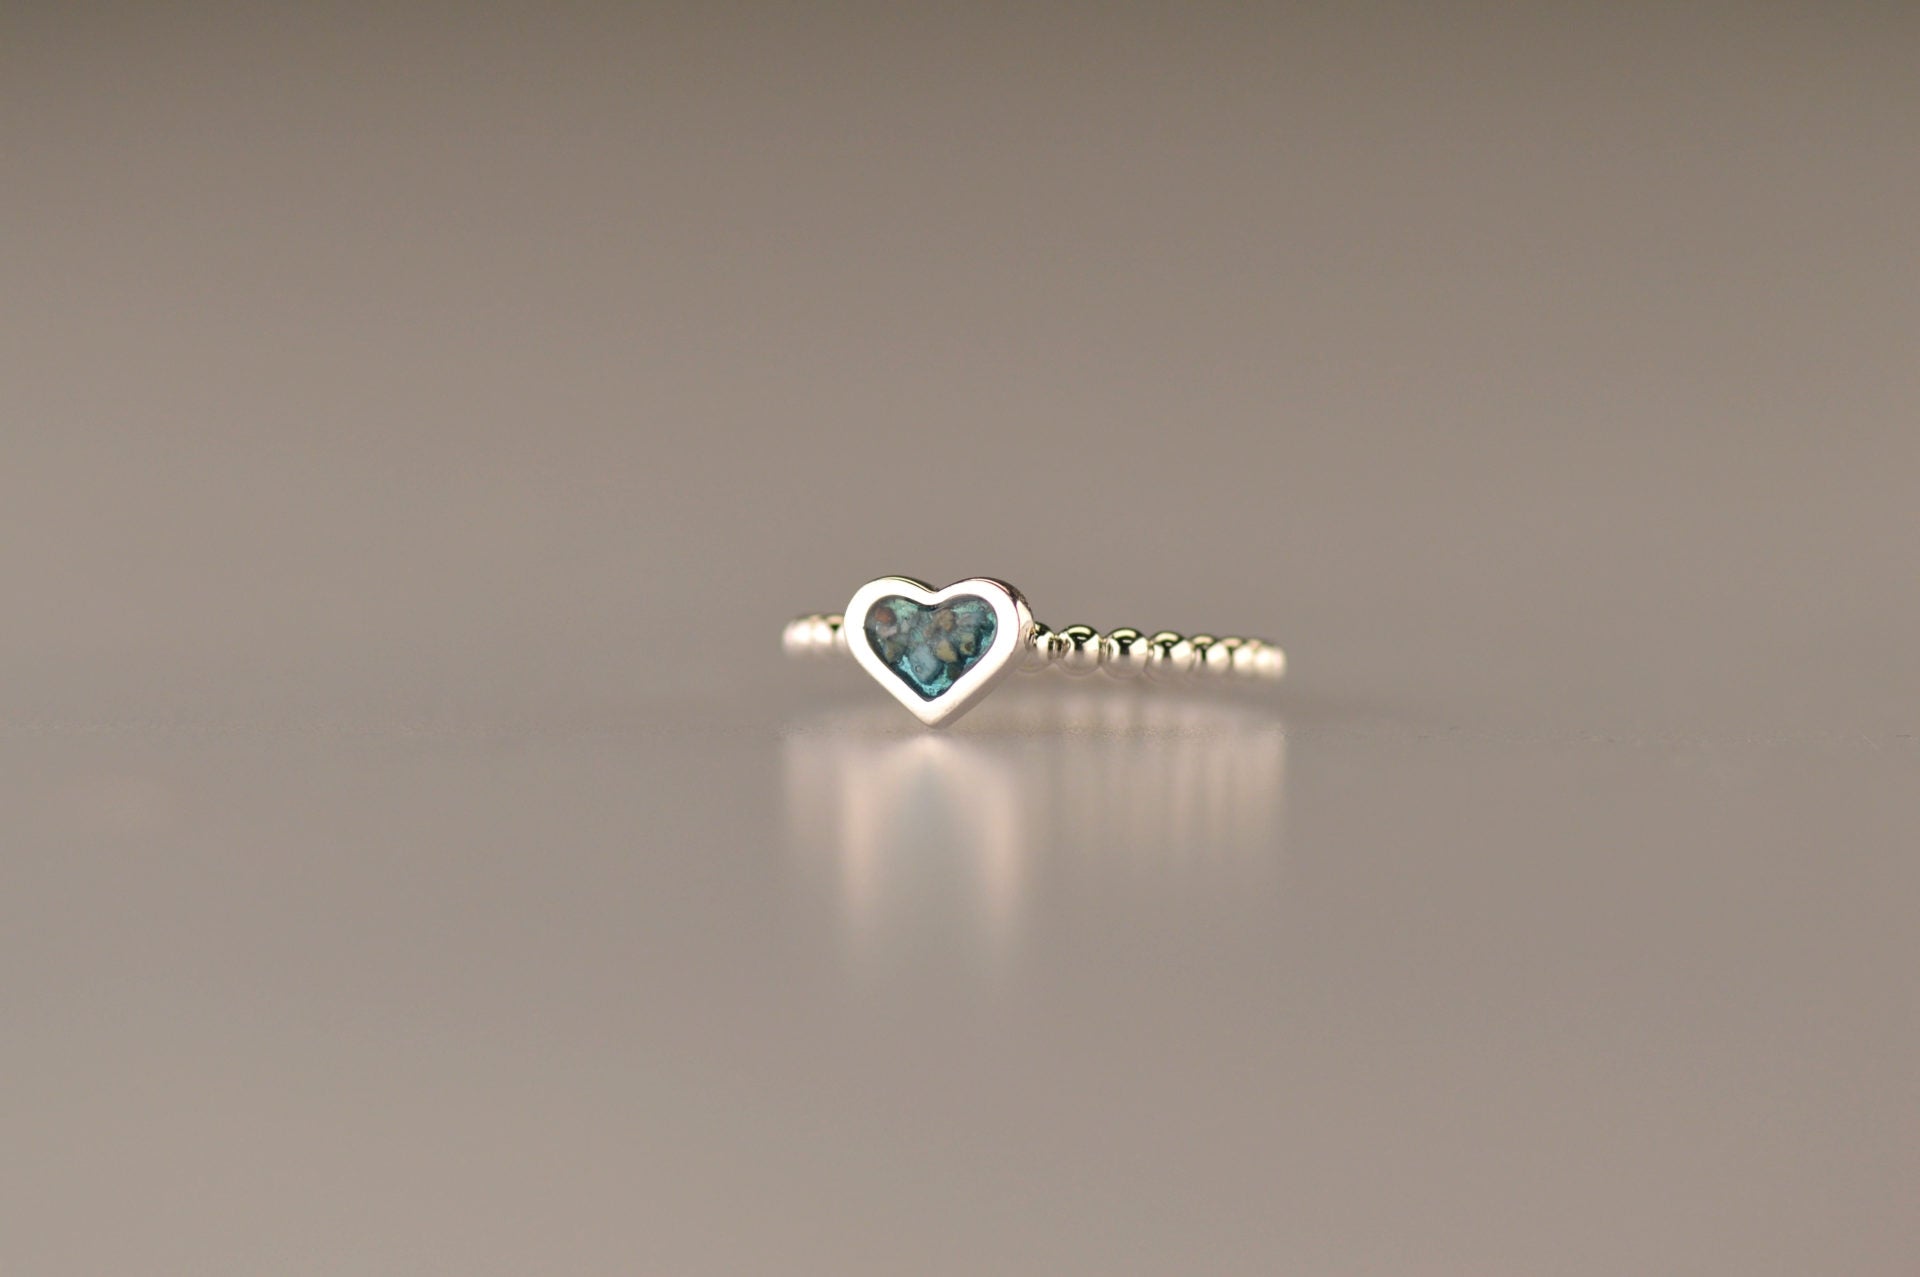 Bolletjes ring met een hartje er boven op , waar zichtbaar as of haar  in verwerkt wordt.De asring is leverbaar in zilver en in 14 en 18 KT geelgoud/witgoud en roségoud.